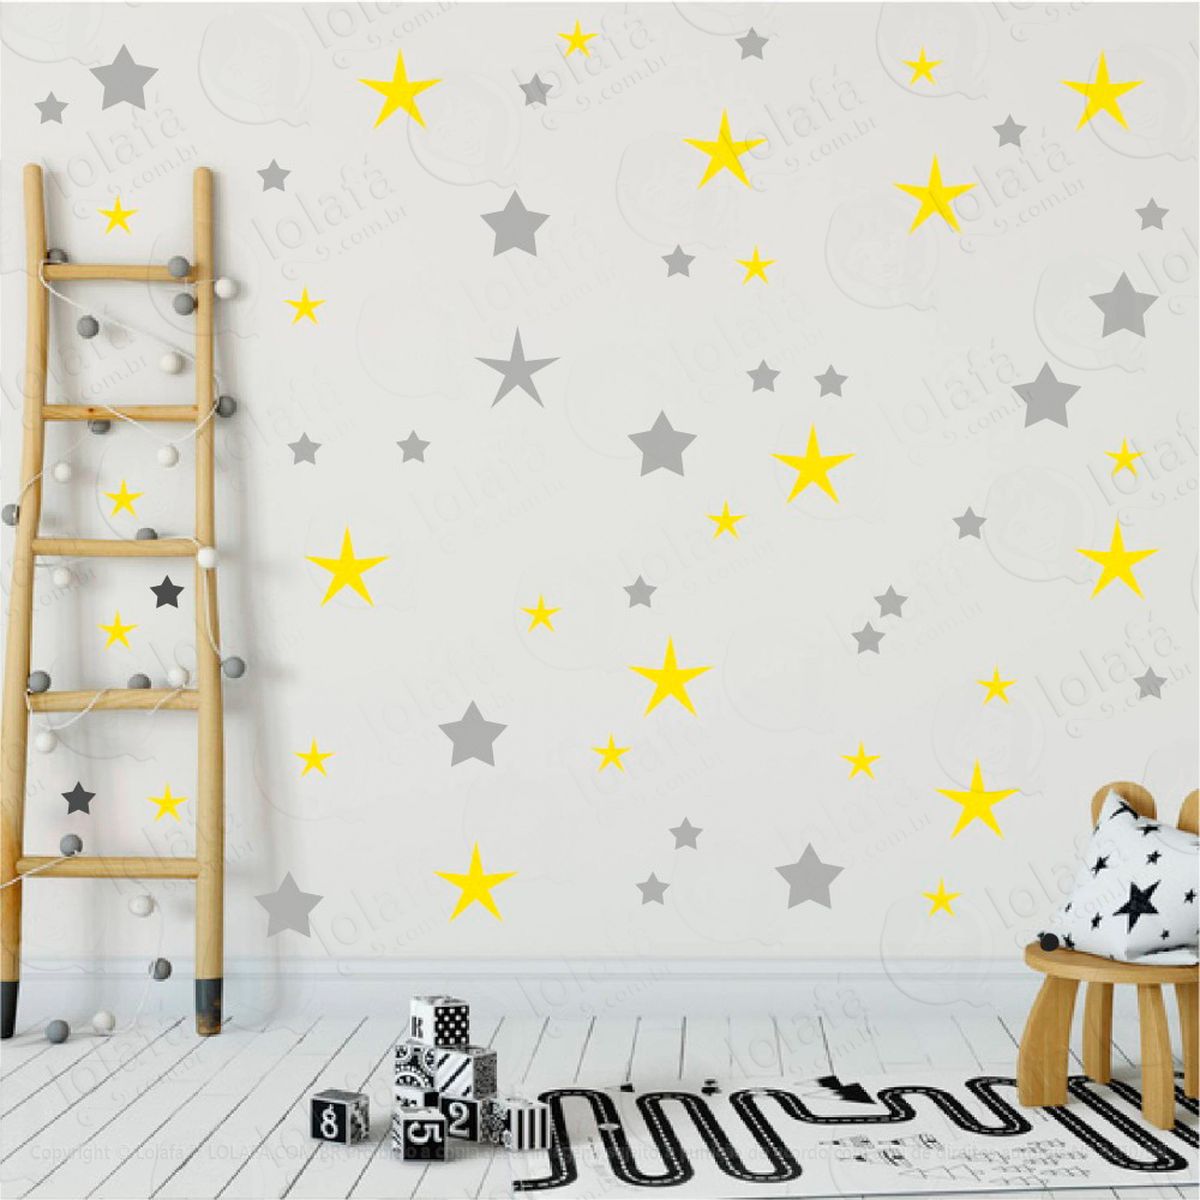 adesivos estrelas 90 peças adesivos para quarto de bebê infantil - mod:19